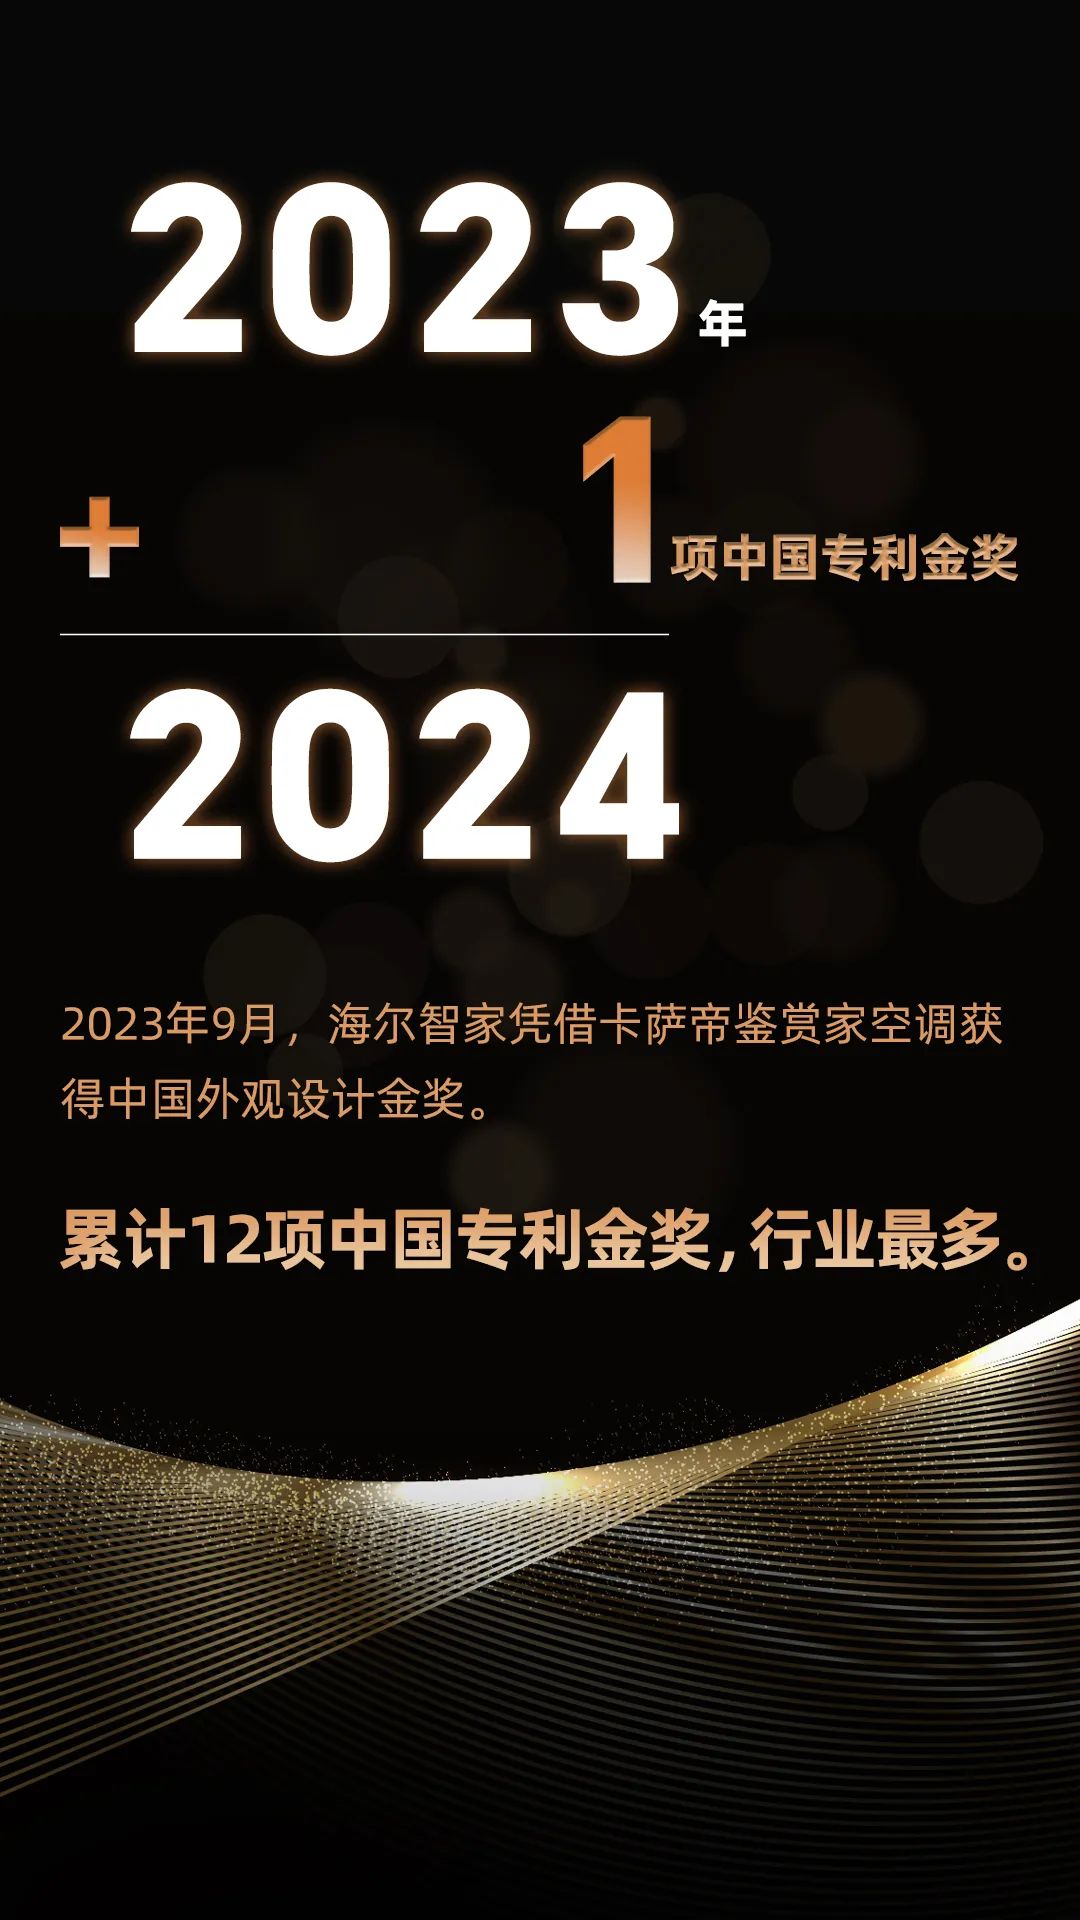 海尔智家科技：2023年+1=2024